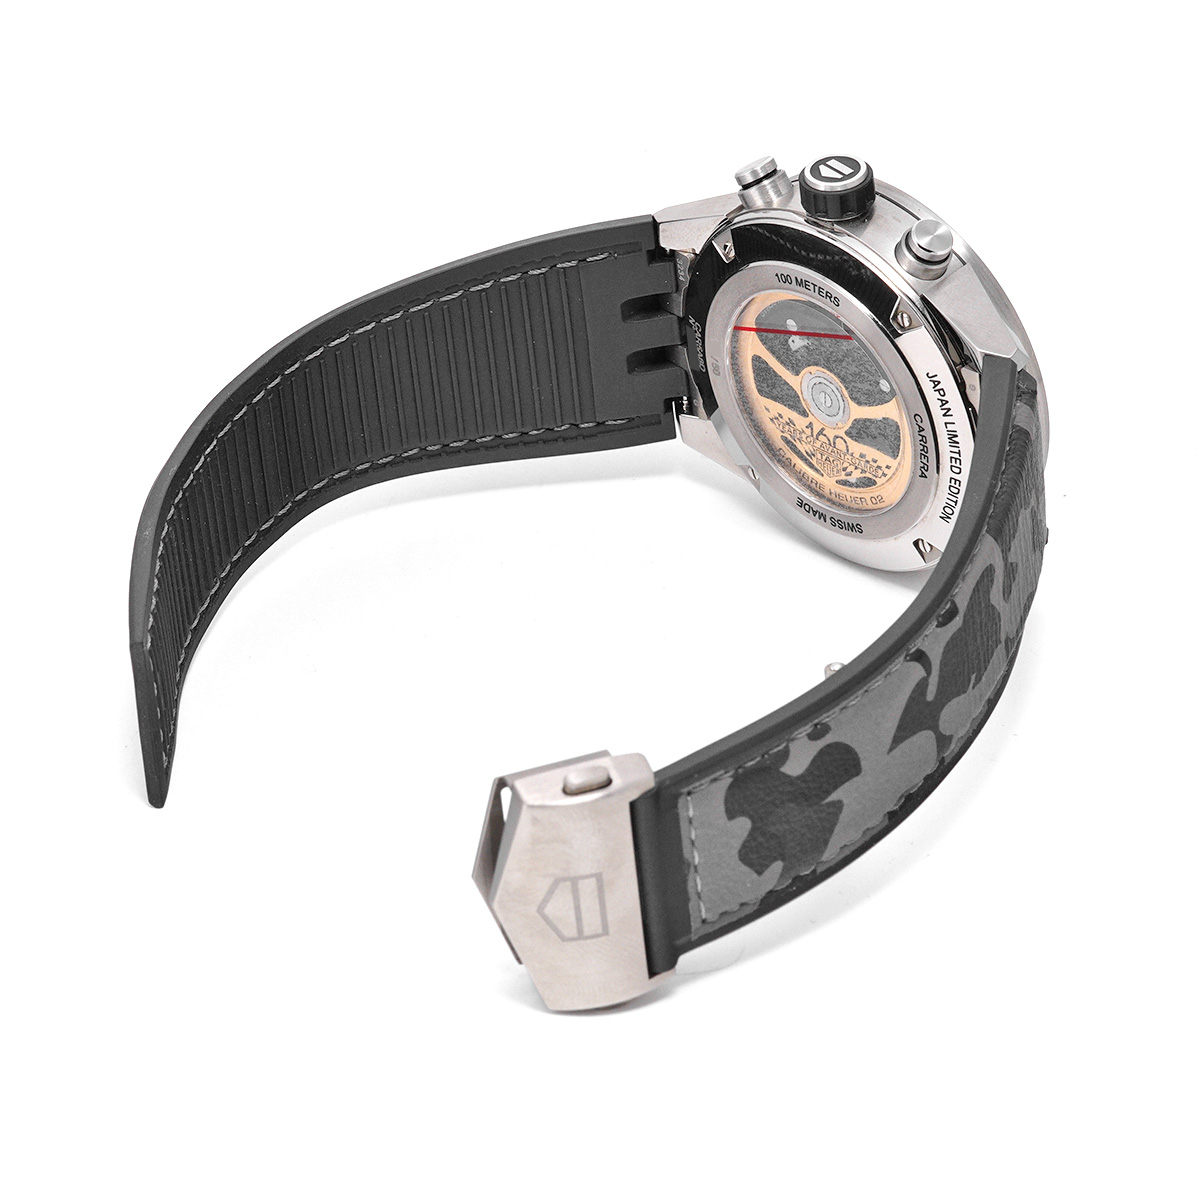 タグ ホイヤー TAG HEUER CAR5A8D.EB0212 ブラック メンズ 腕時計